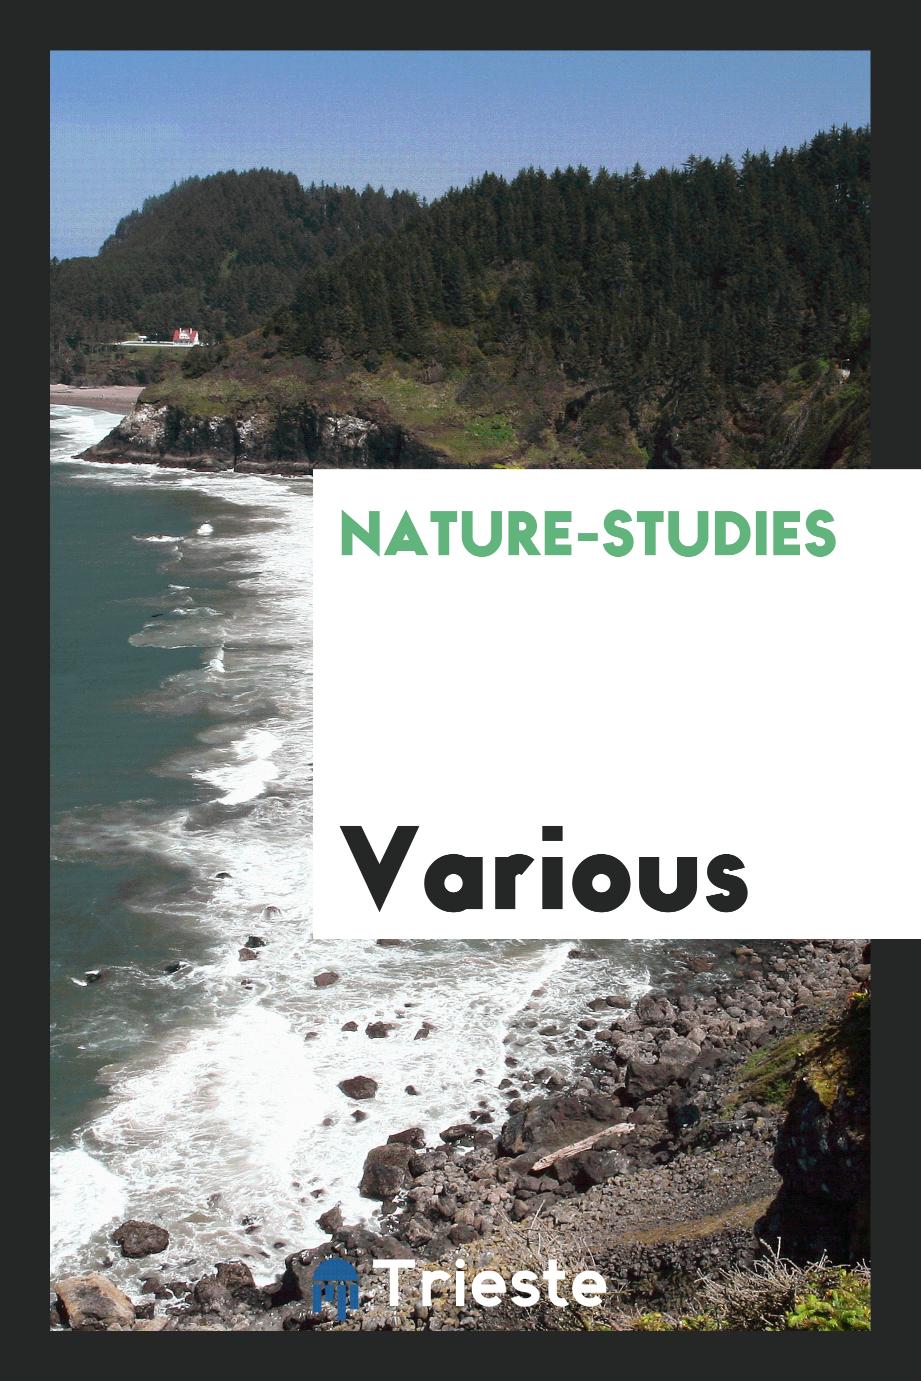 Nature-studies